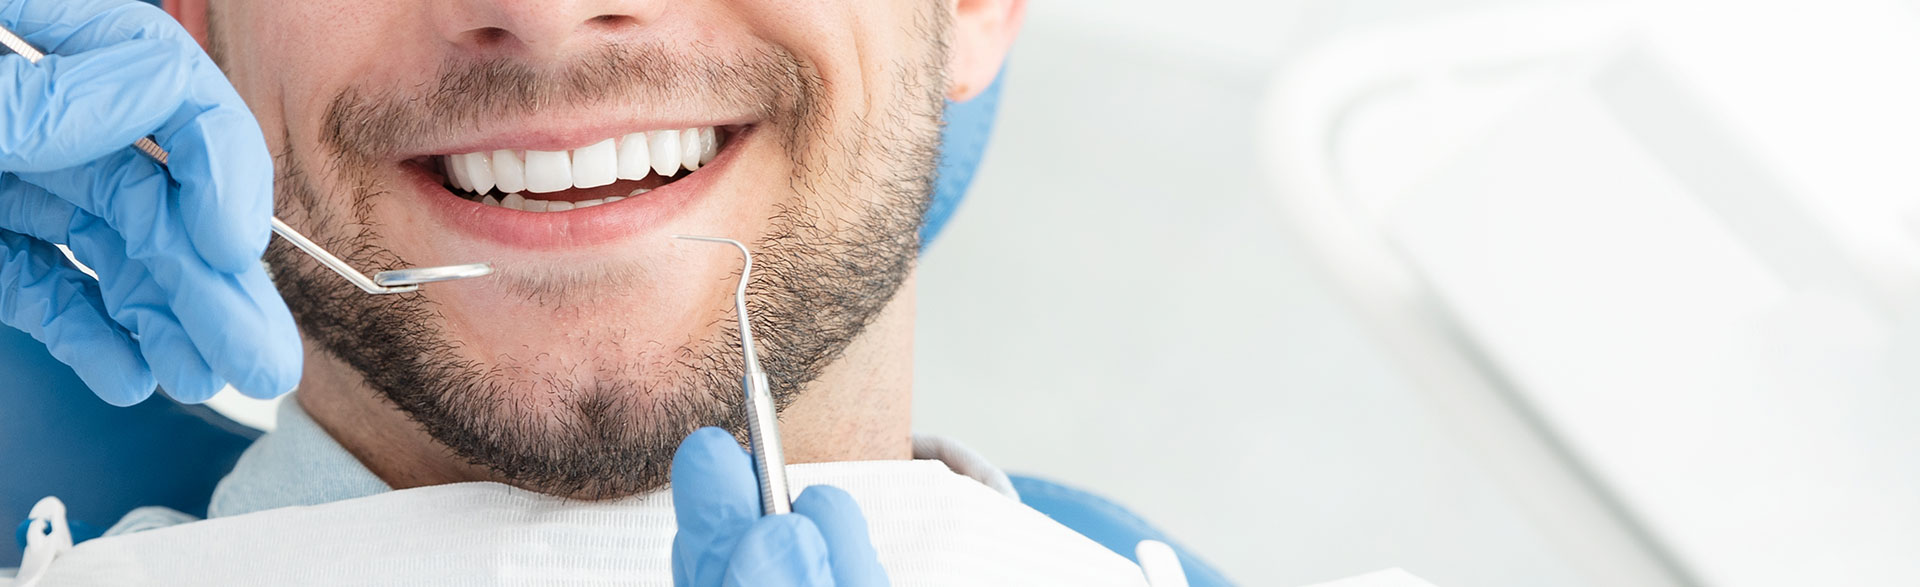 Man smiling at dental